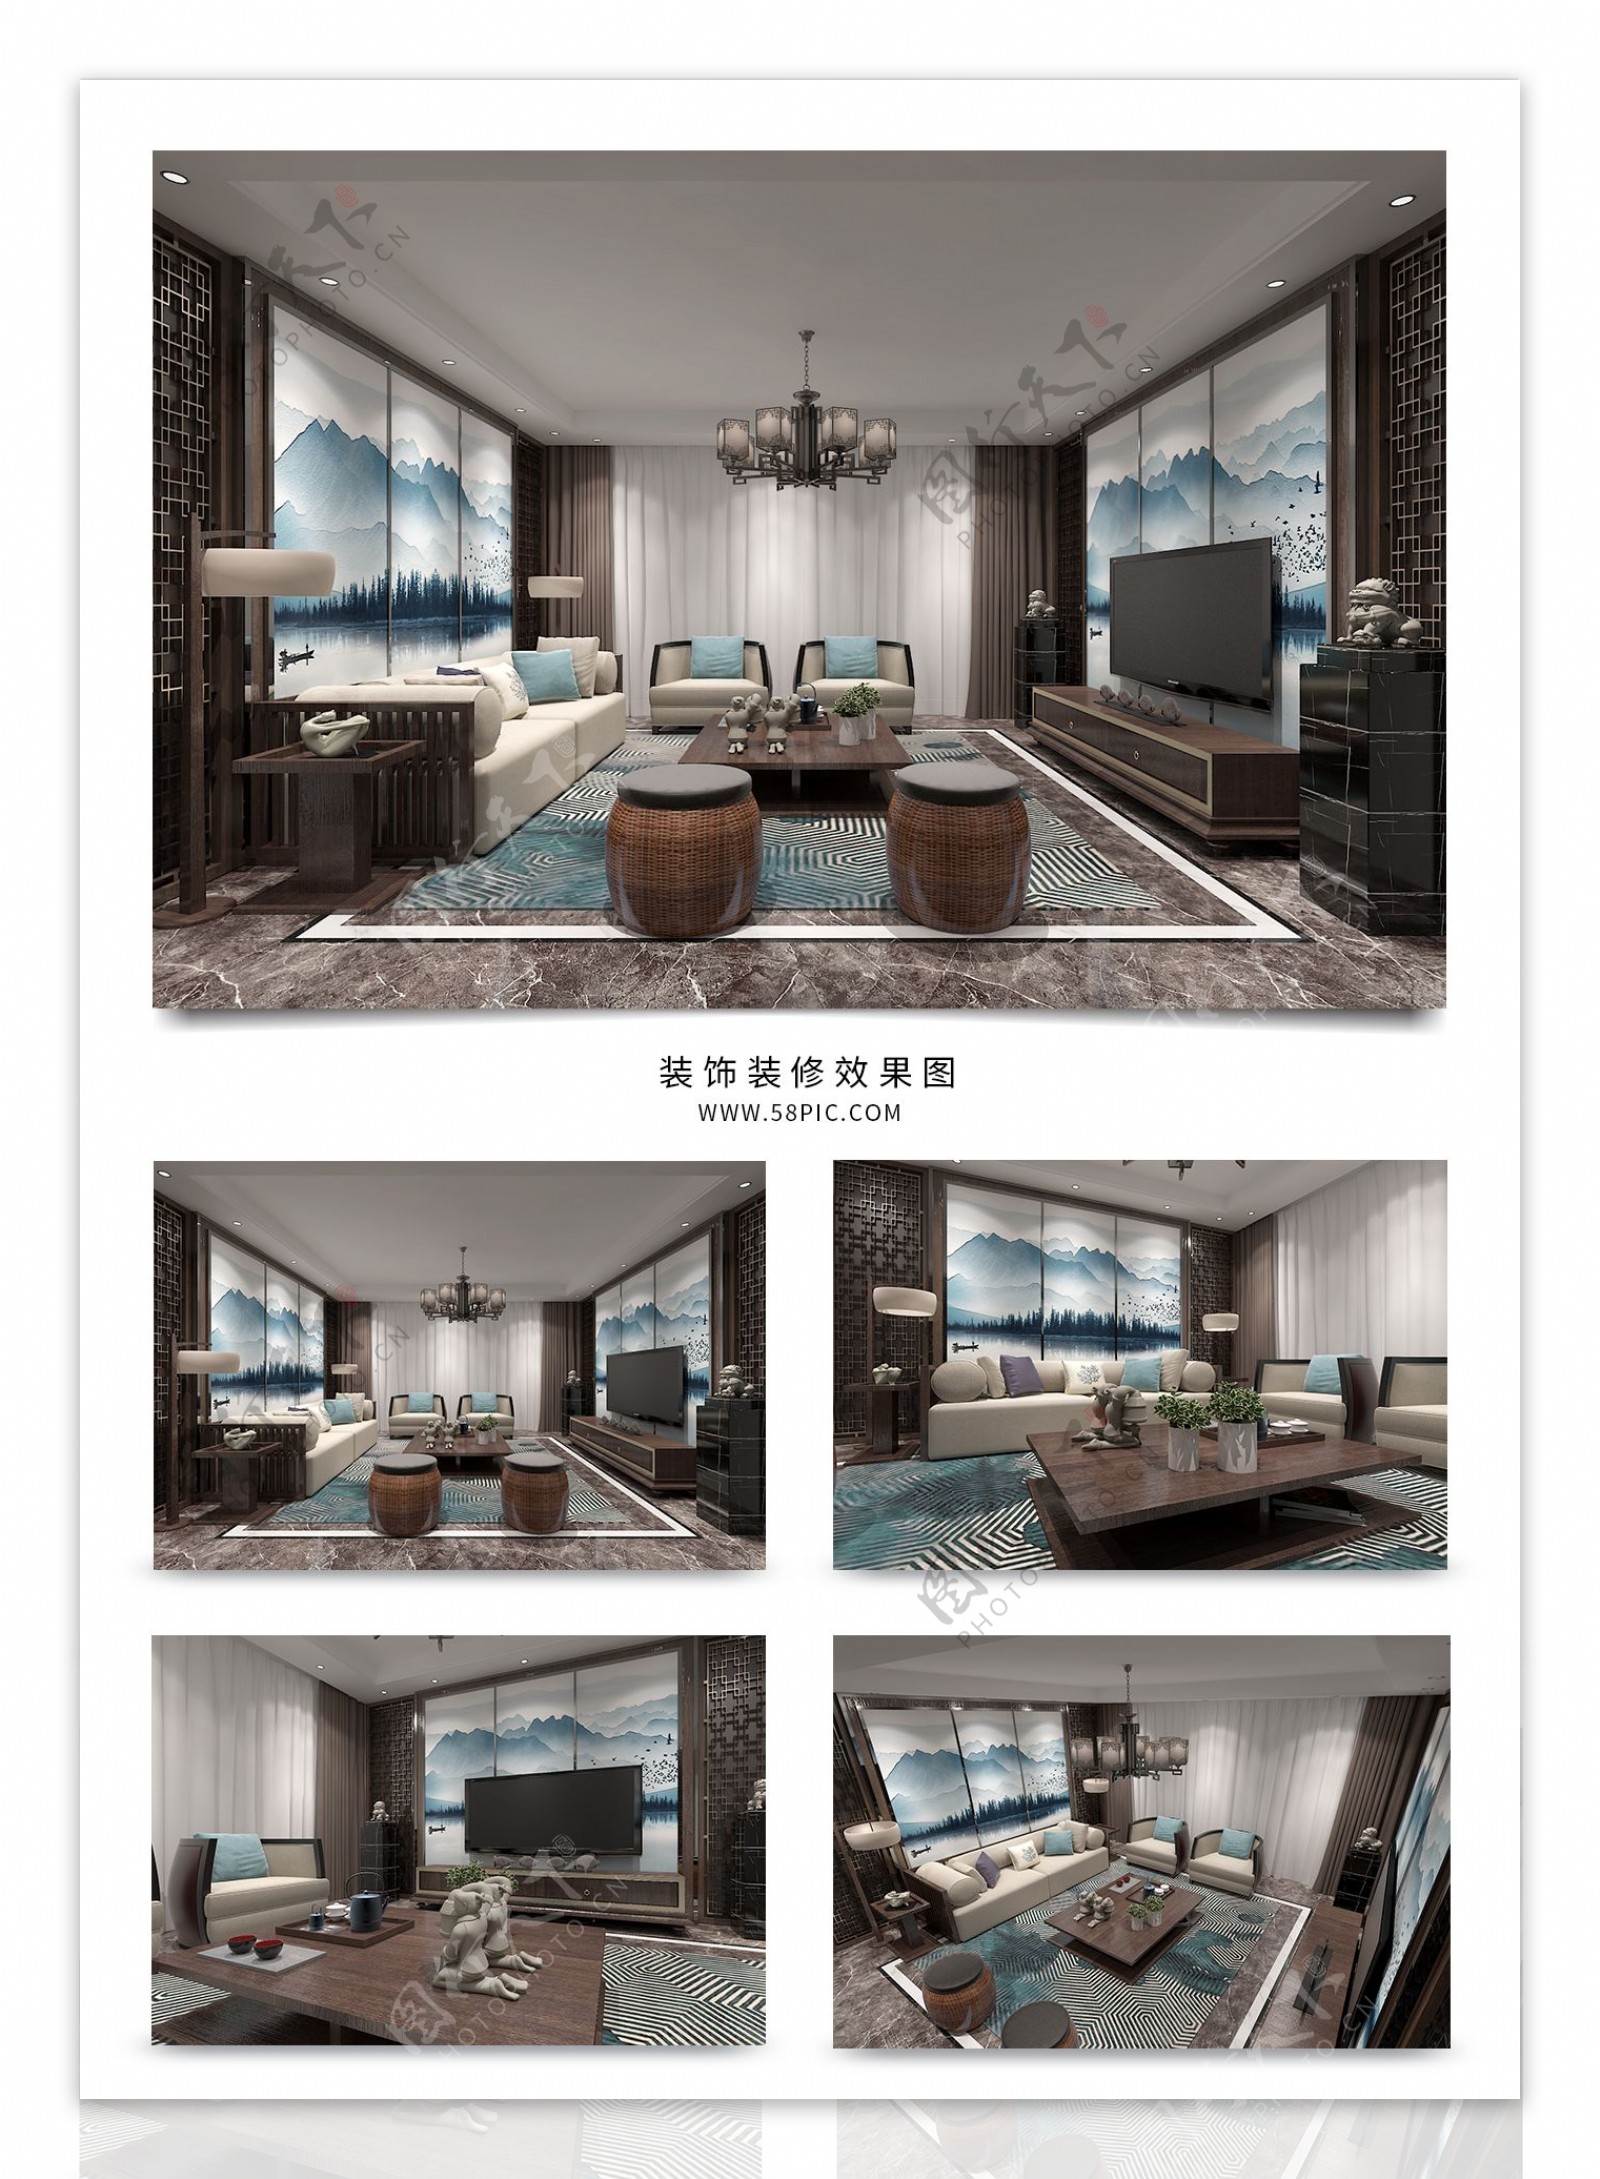 中式古香古色客厅室内装修效果图